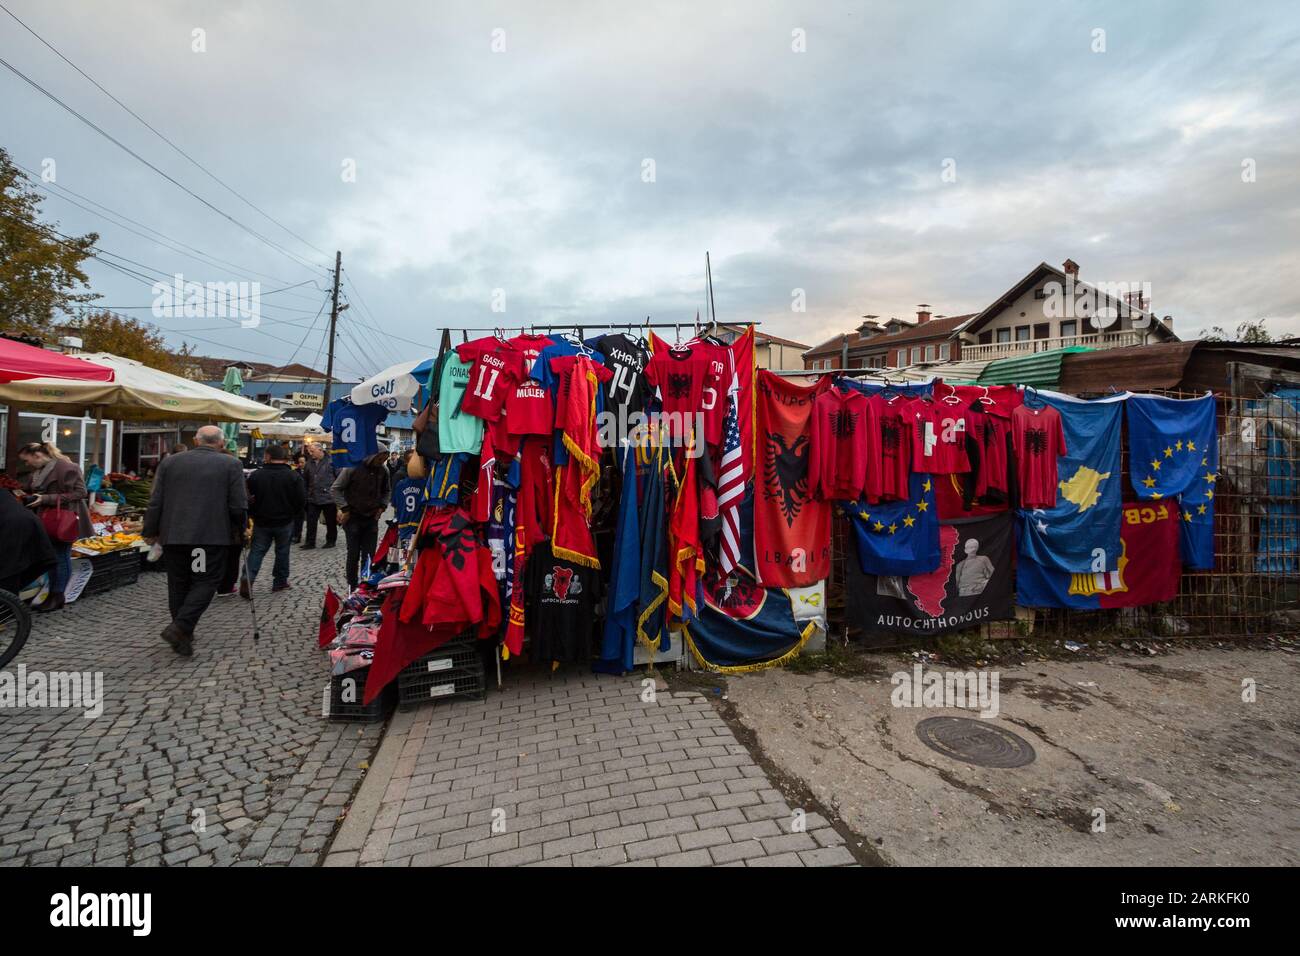 Prishtina, KOSOVO - 11 NOVEMBRE 2016 : décrochage sur le marché de Prishtina avec drapeaux albanais et autres articles nationaux à vendre. Pristina est la CA kosovan Banque D'Images